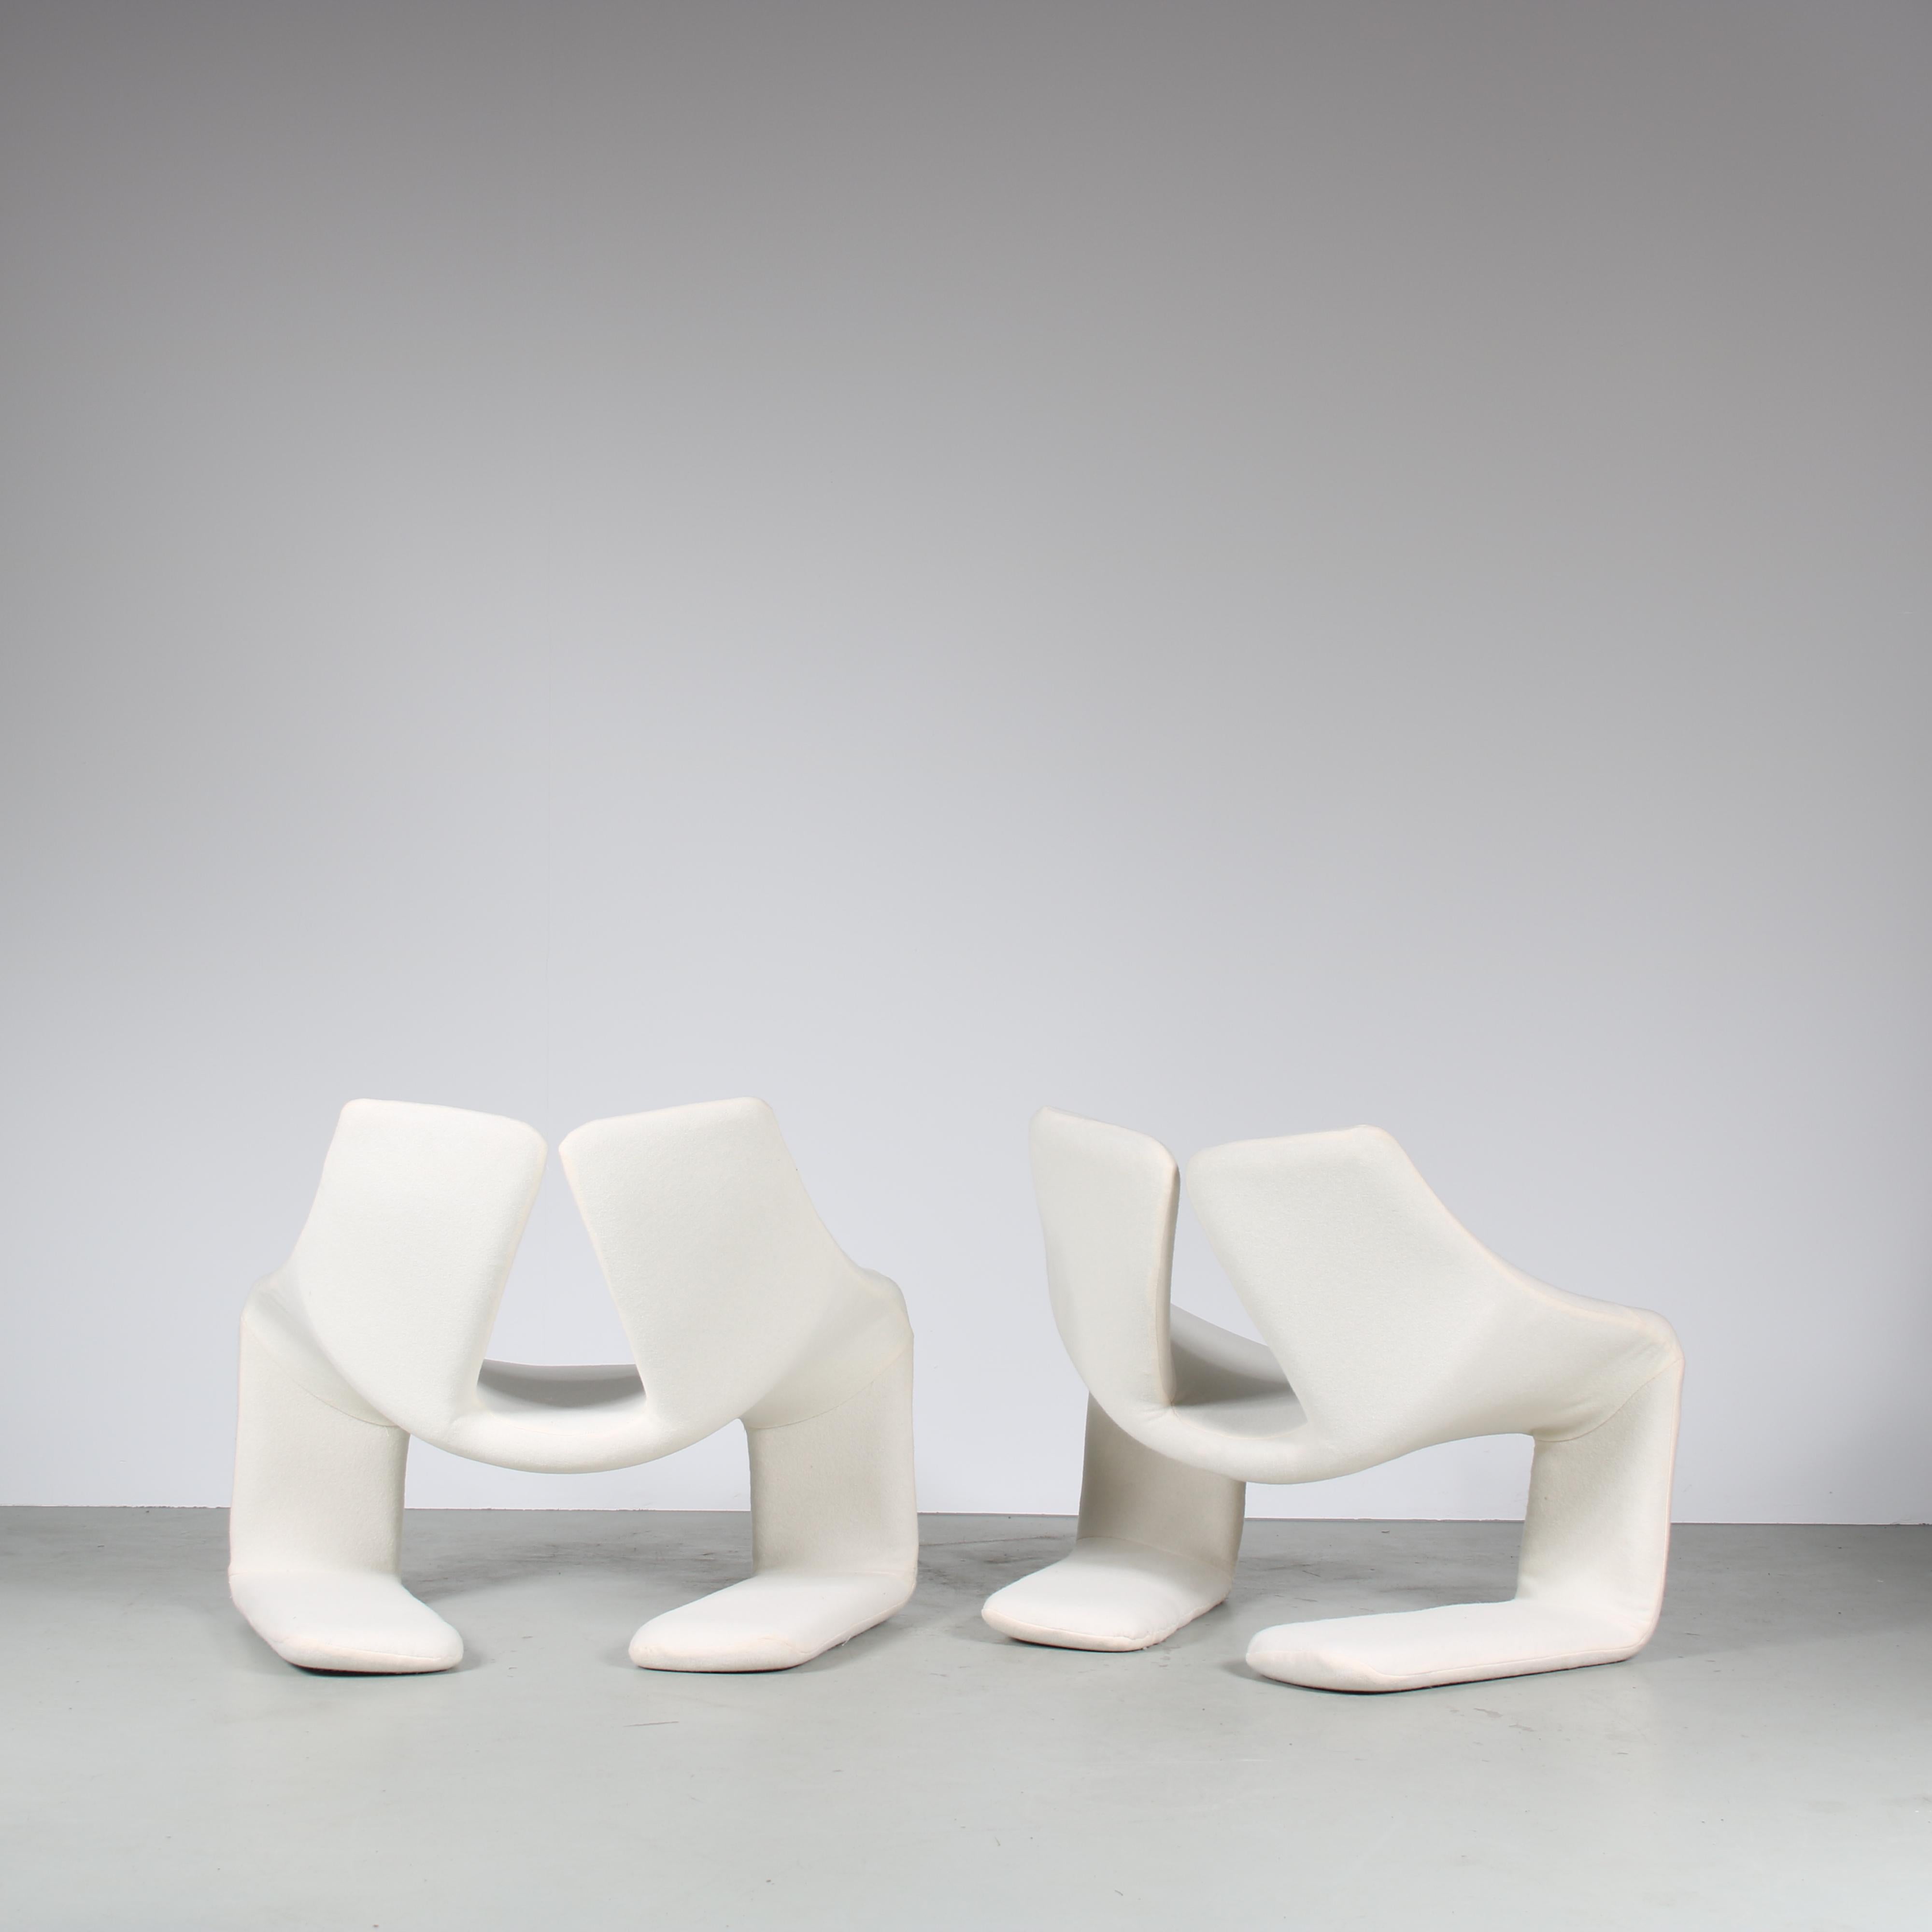 Fin du 20e siècle Paire de chaises zen de Kwok Hoi Chan pour Steiner, France